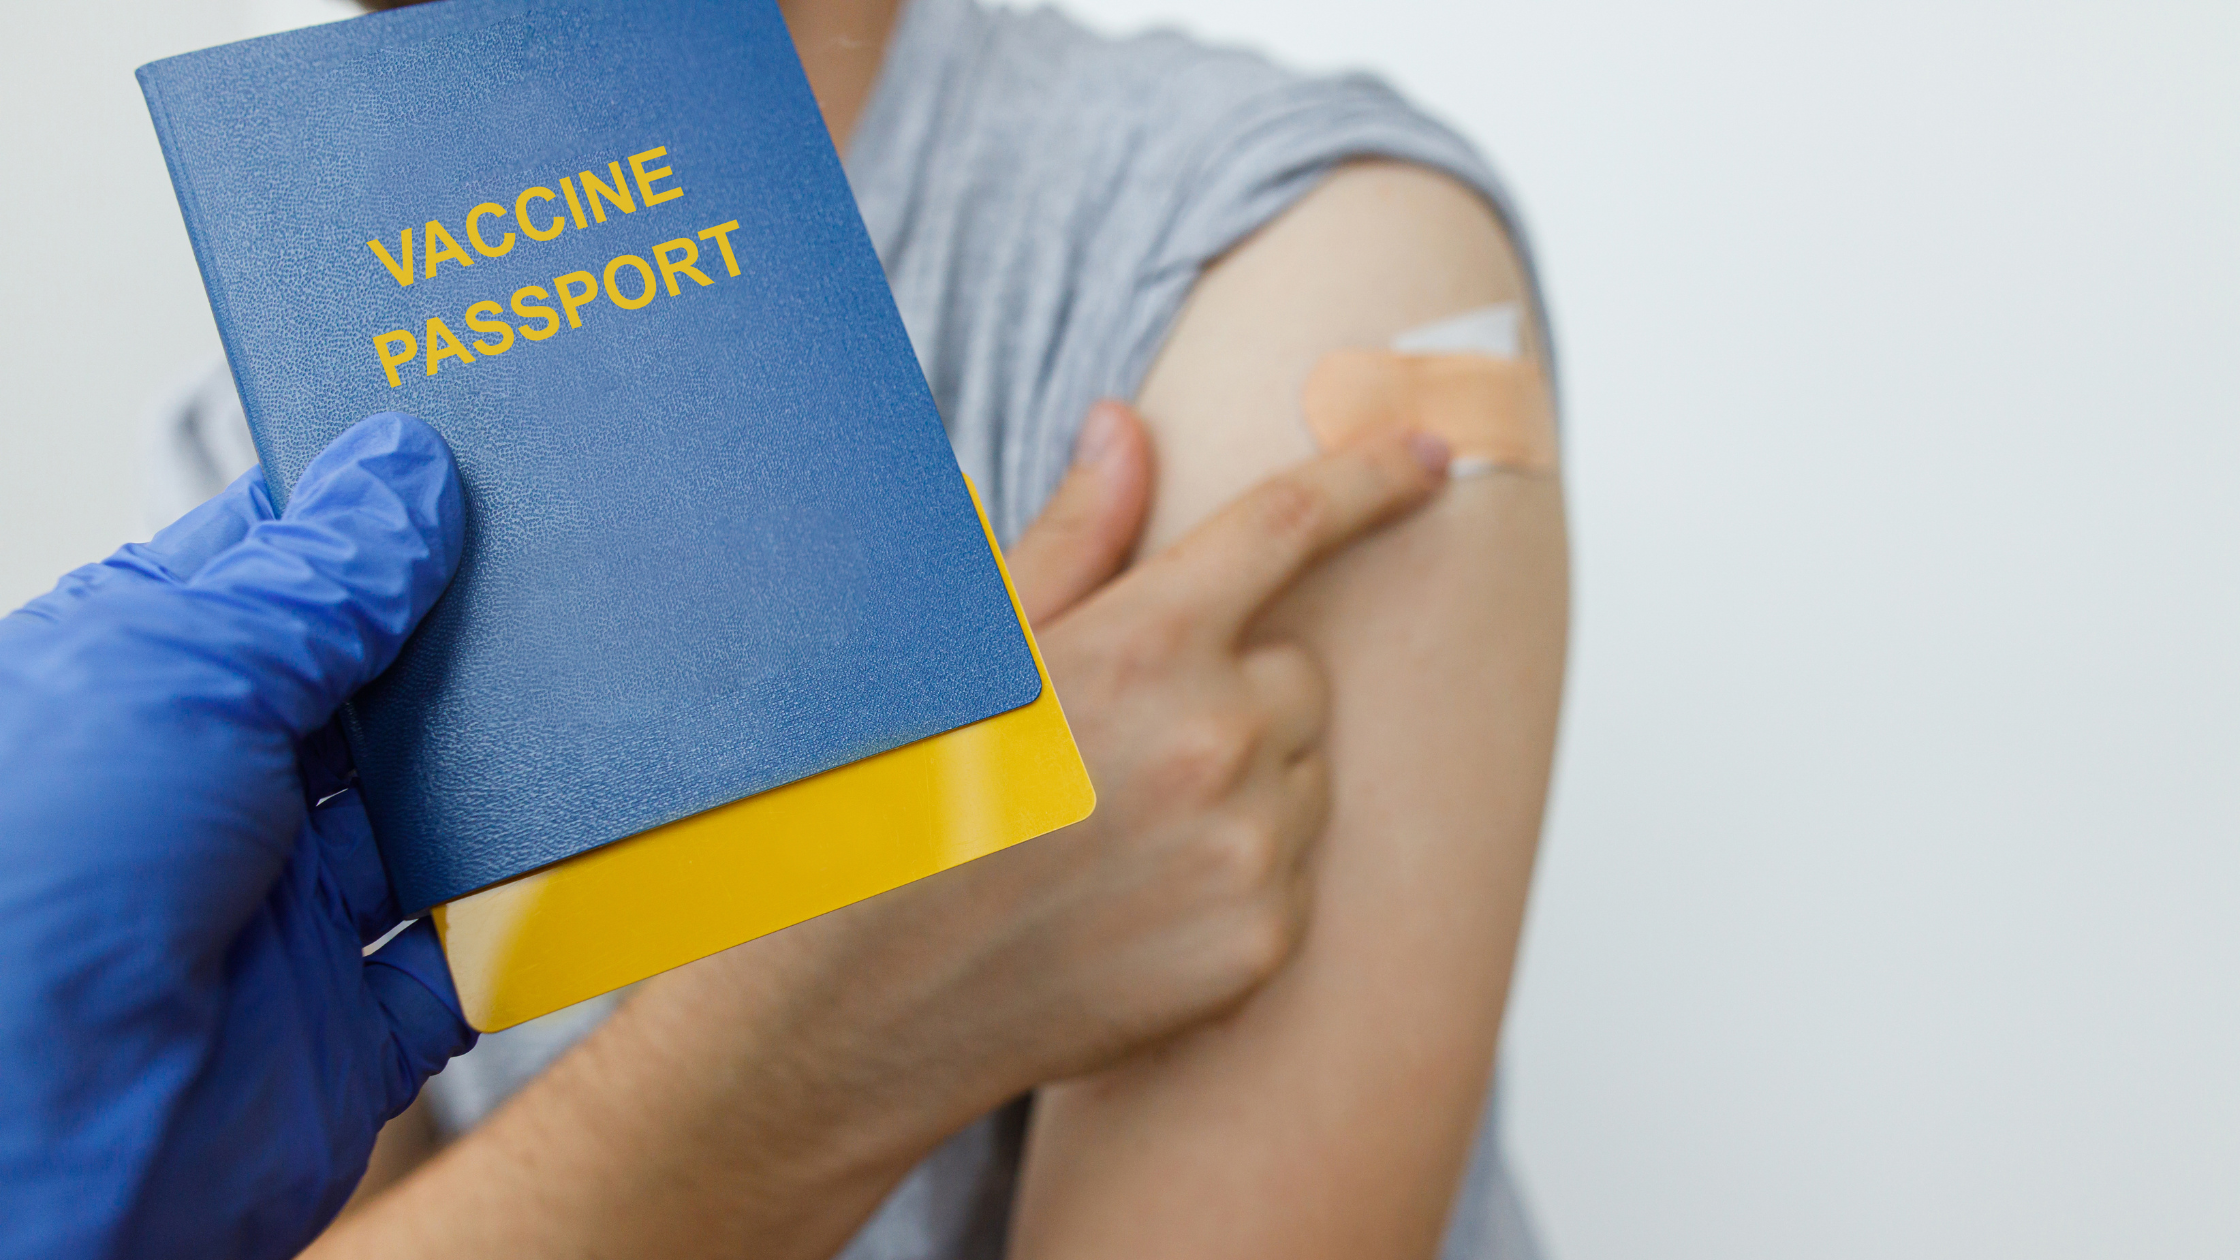 Vaccine Passport